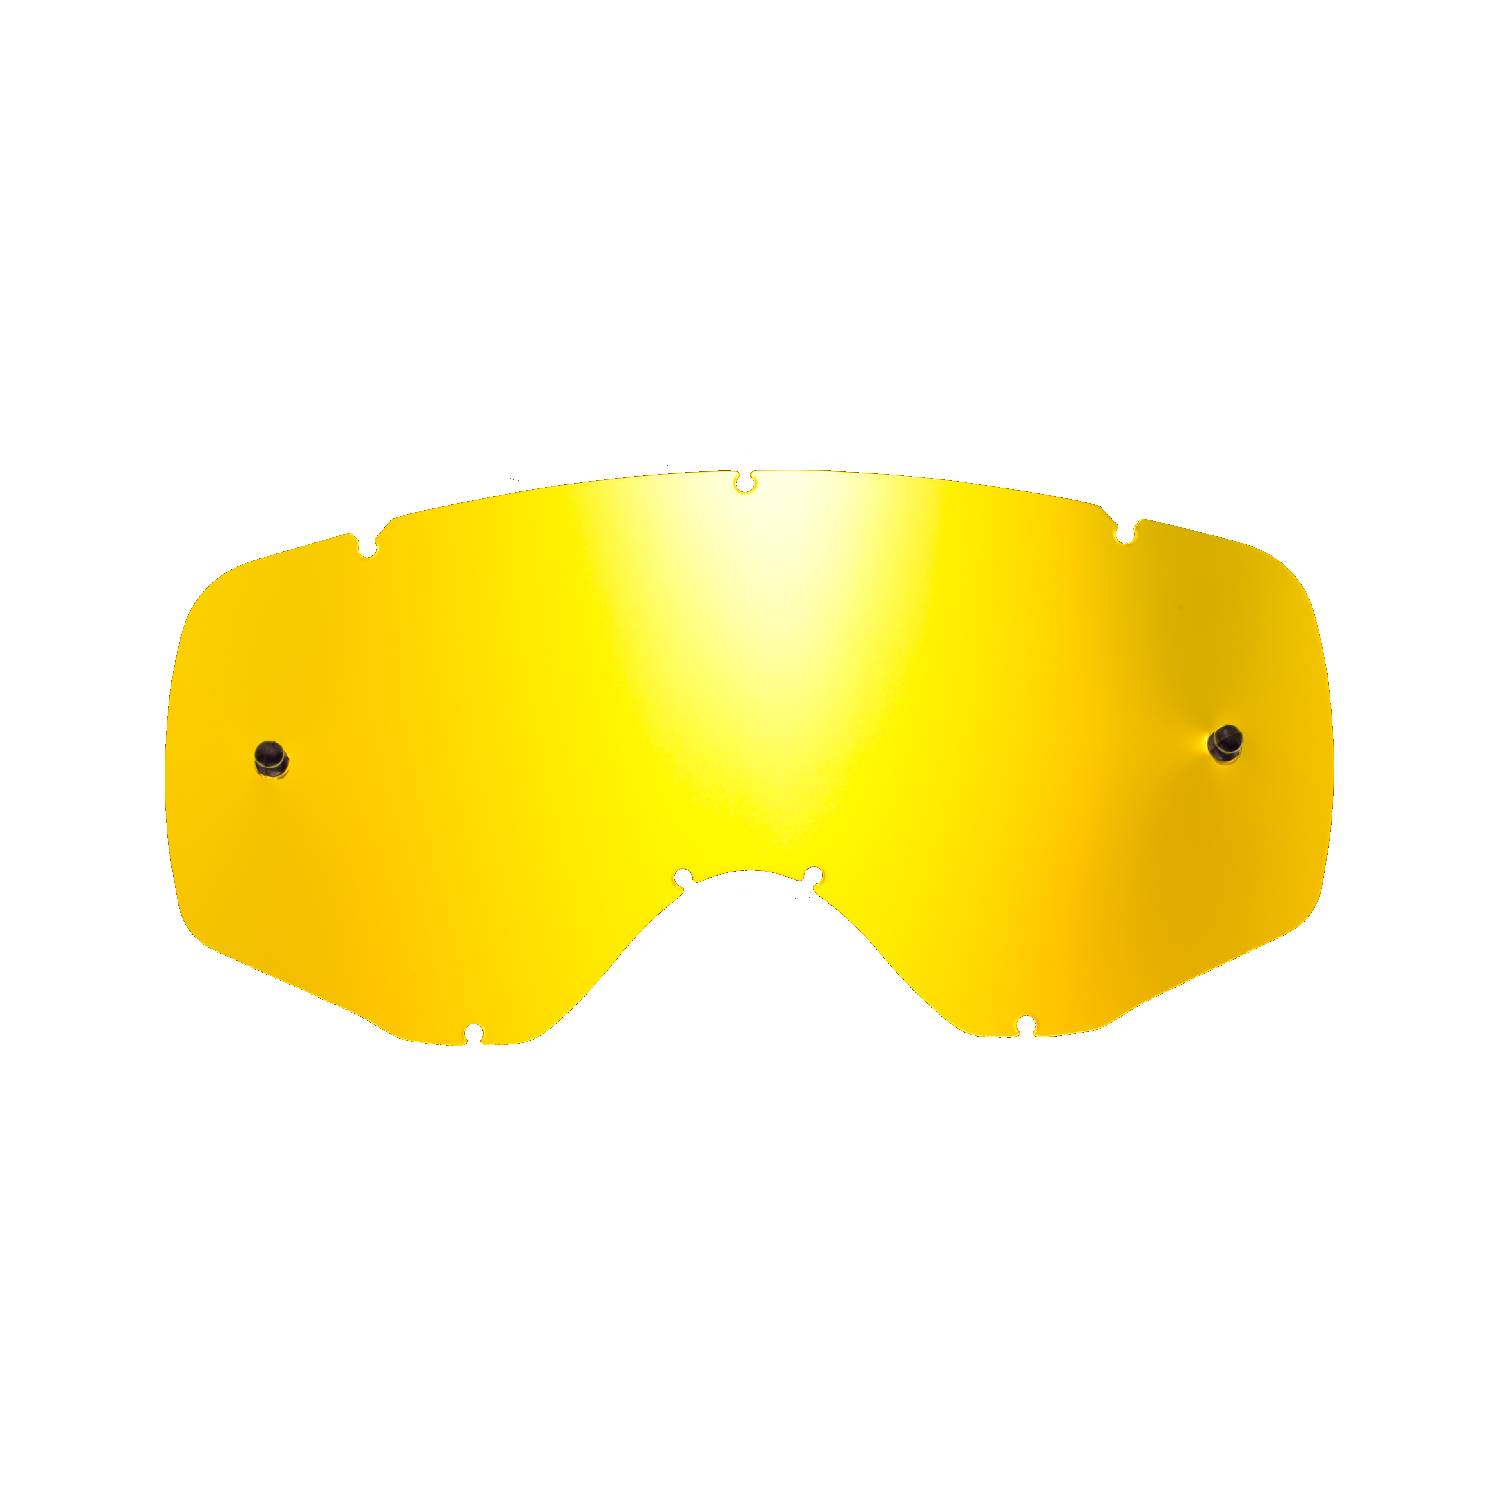 Lente di ricambio oro specchiato compatibile per occhiale/maschera cross Ethen Zerosei GP/ Basic / Evolution/ Mud Mask